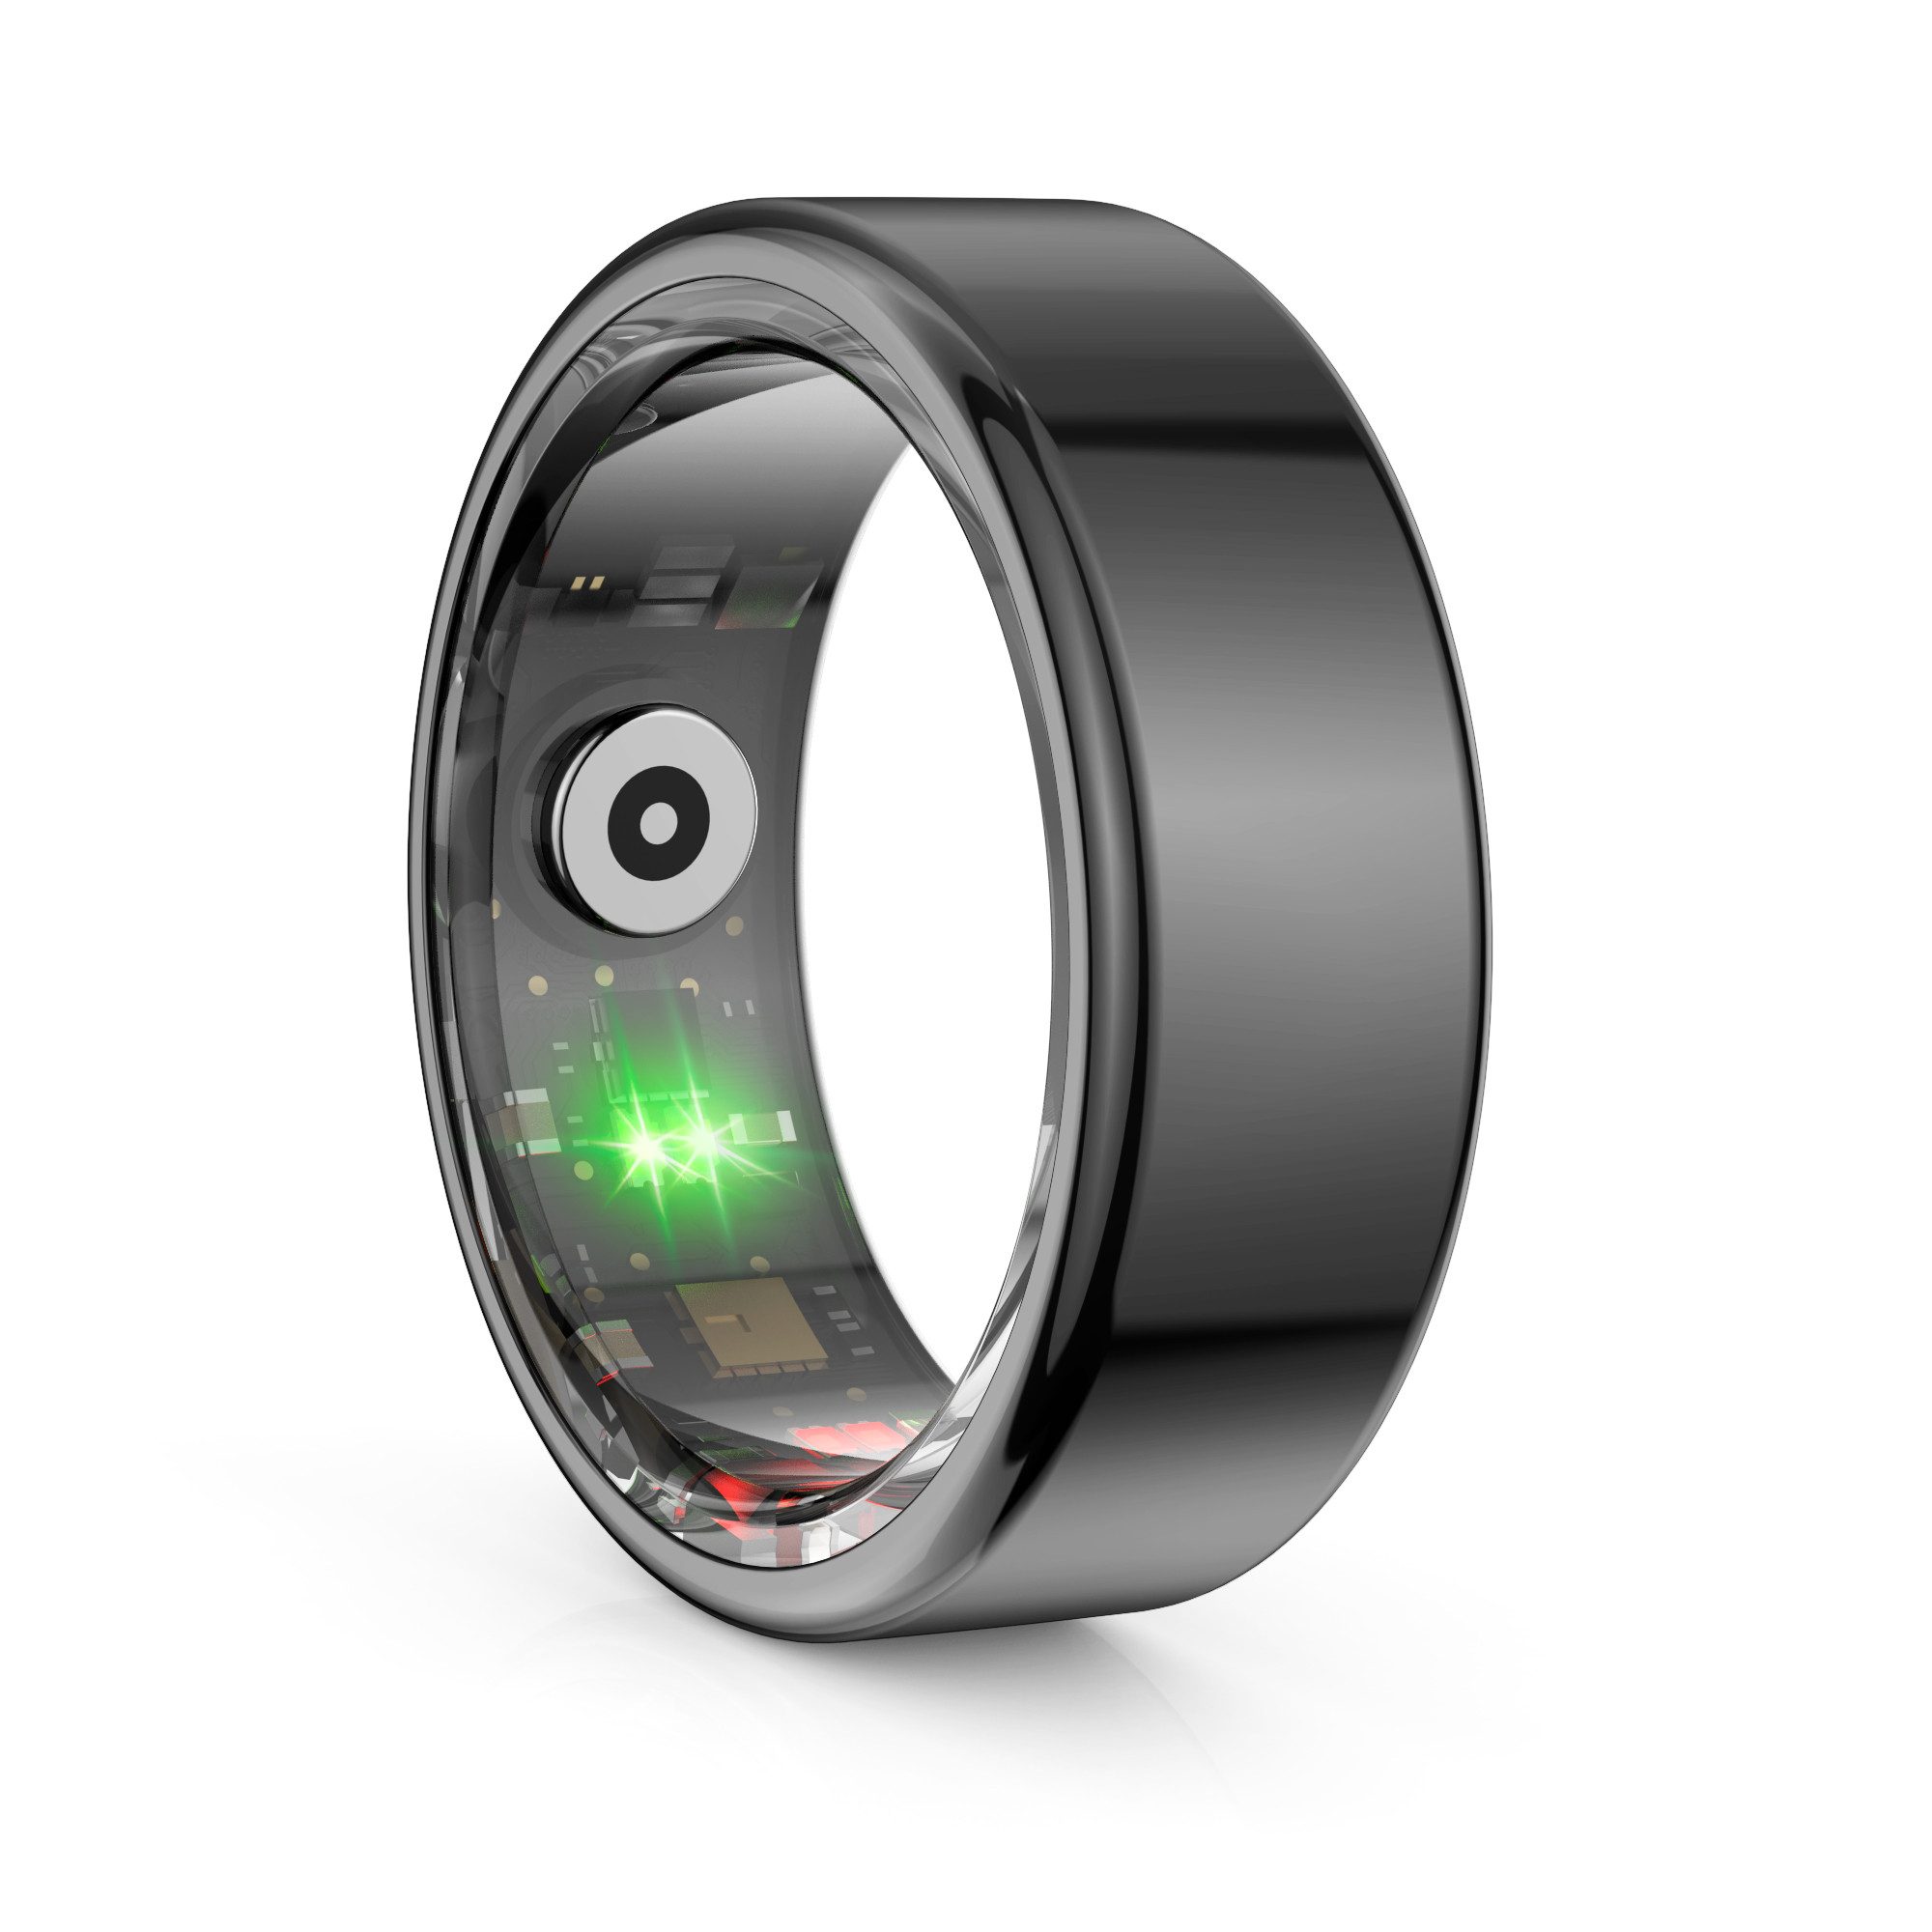 Mutoy Smart Ring Smartringe für Herren und Damen Smartwatch (10#Innendurchmesser 19,8 mm Umfang 6.21 cm) Smartring zur Überwachung Schlaf und Herzfrequenz,Fitness- und Wellness-Tracker,Schrittzähler-Ring, IP68 wasserdicht, APP für iOS & Android